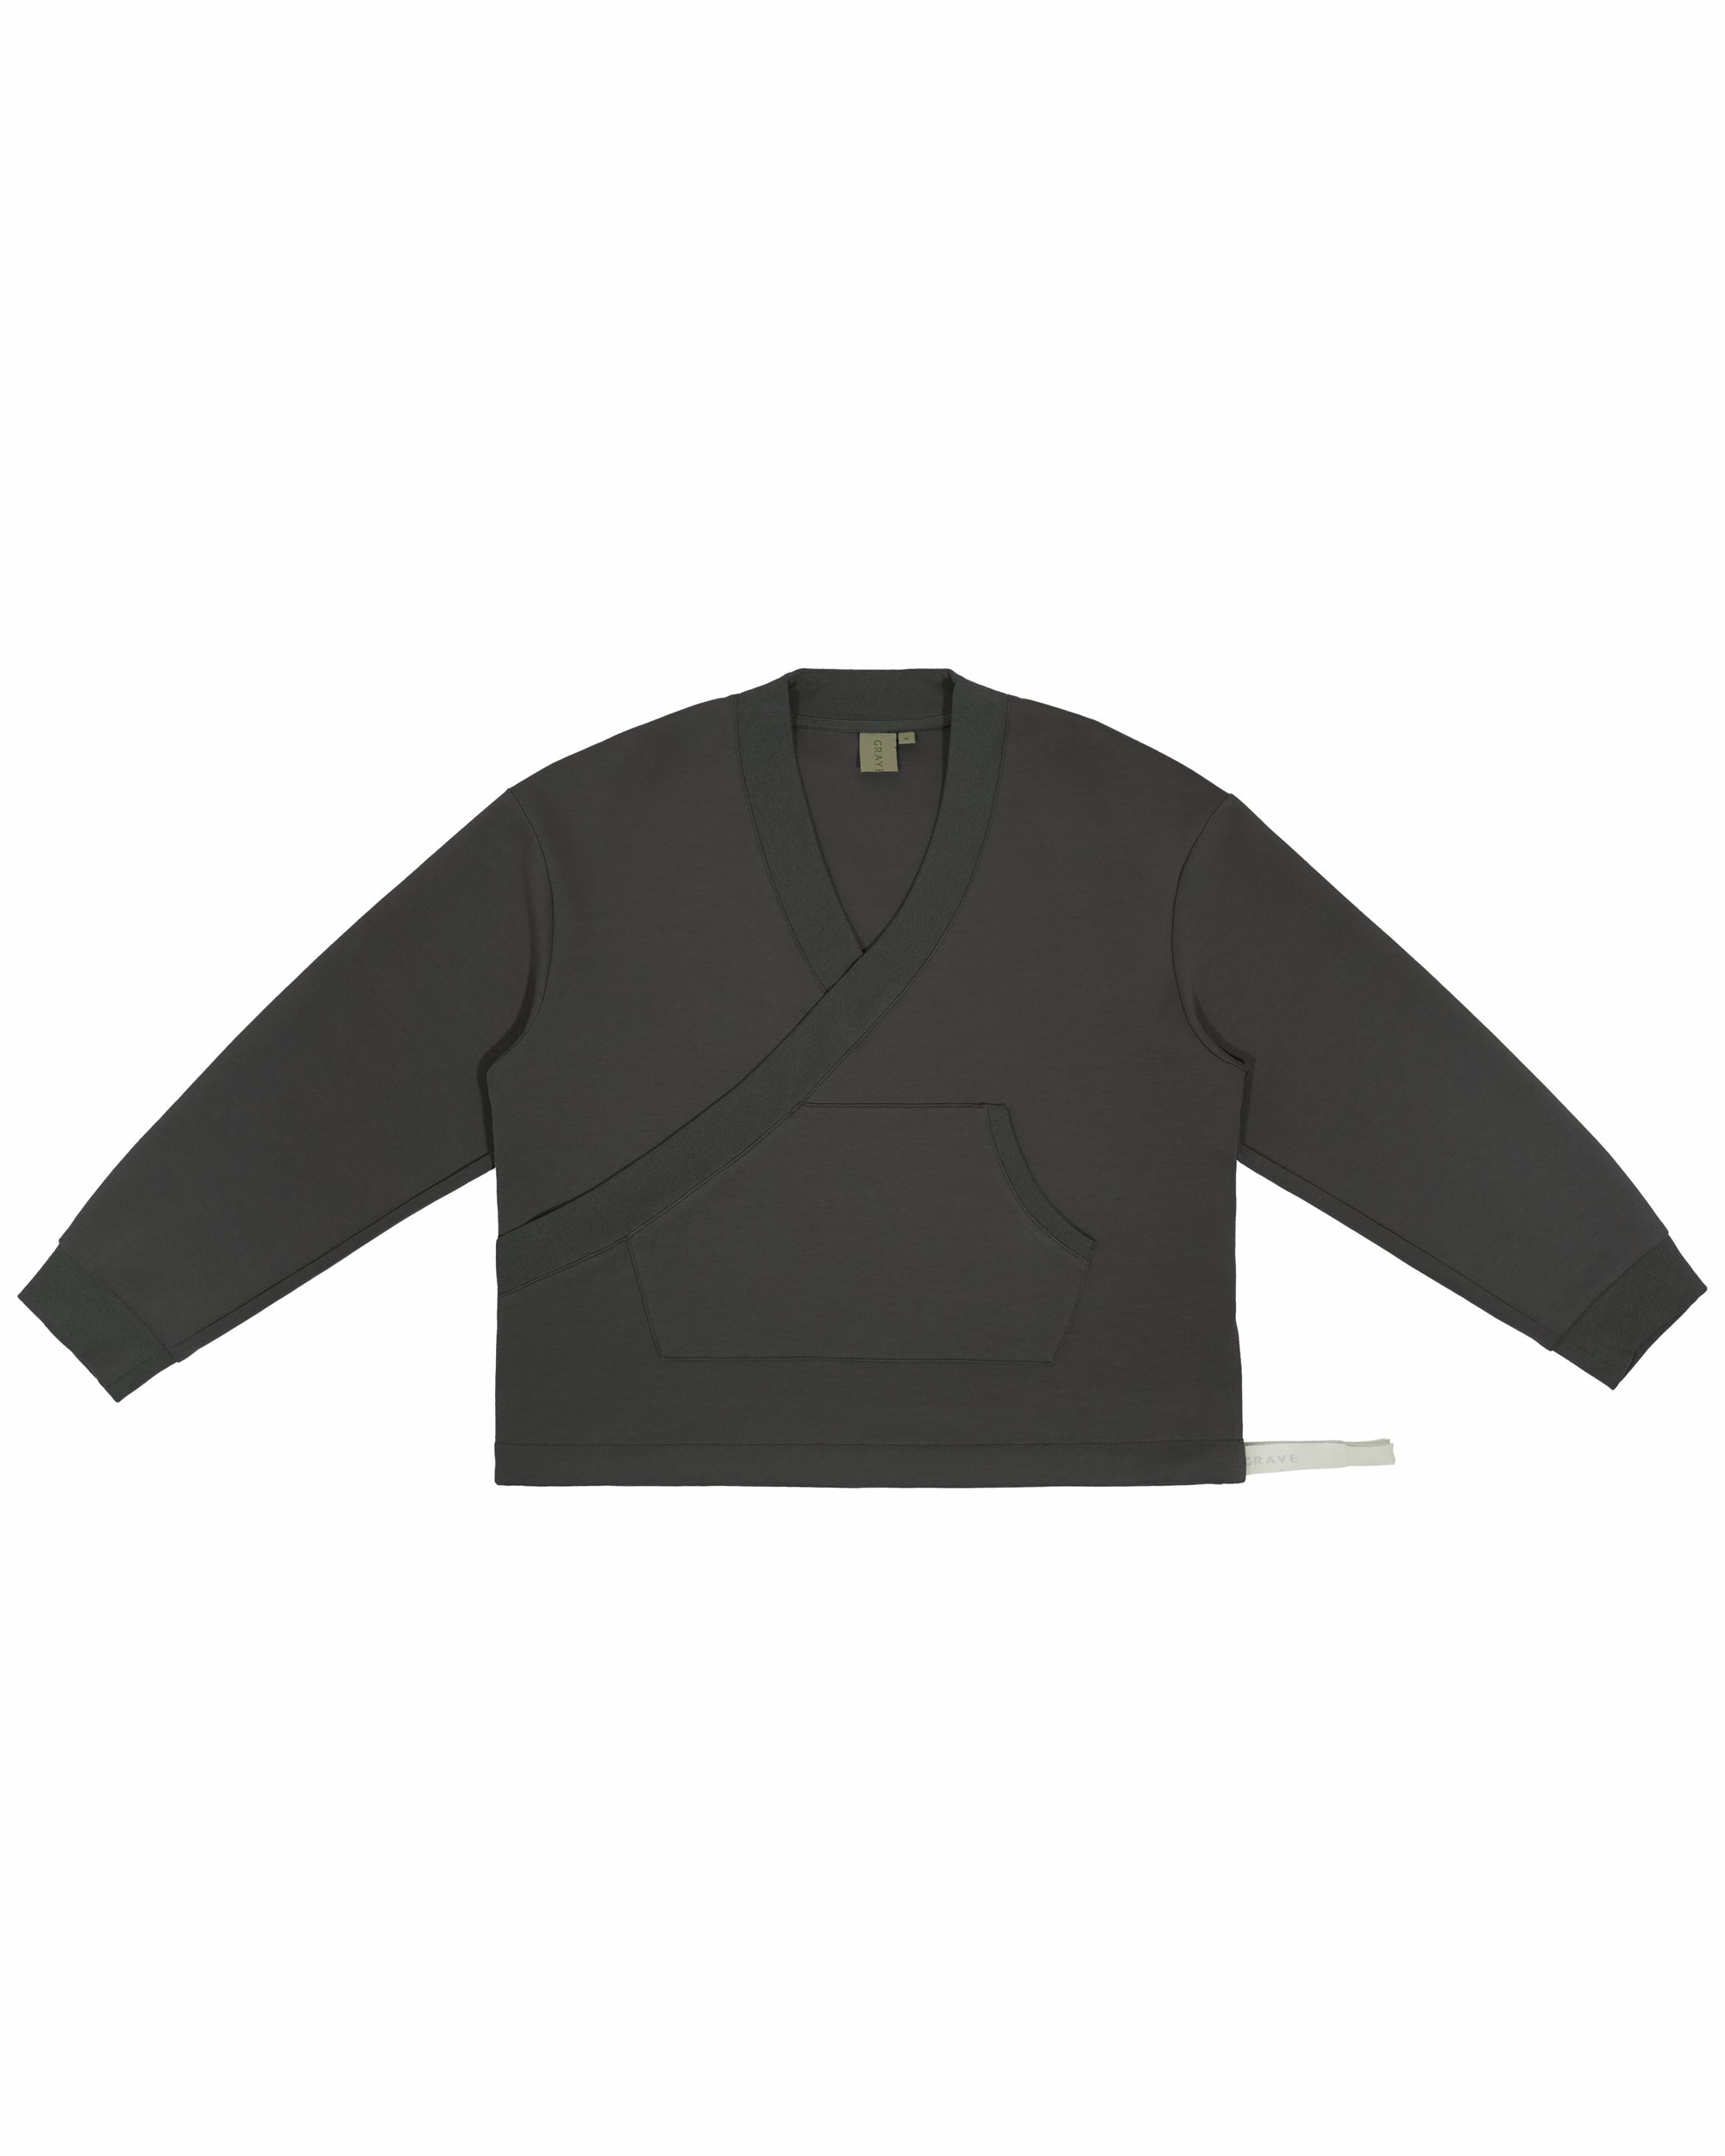 Kimono Sweater